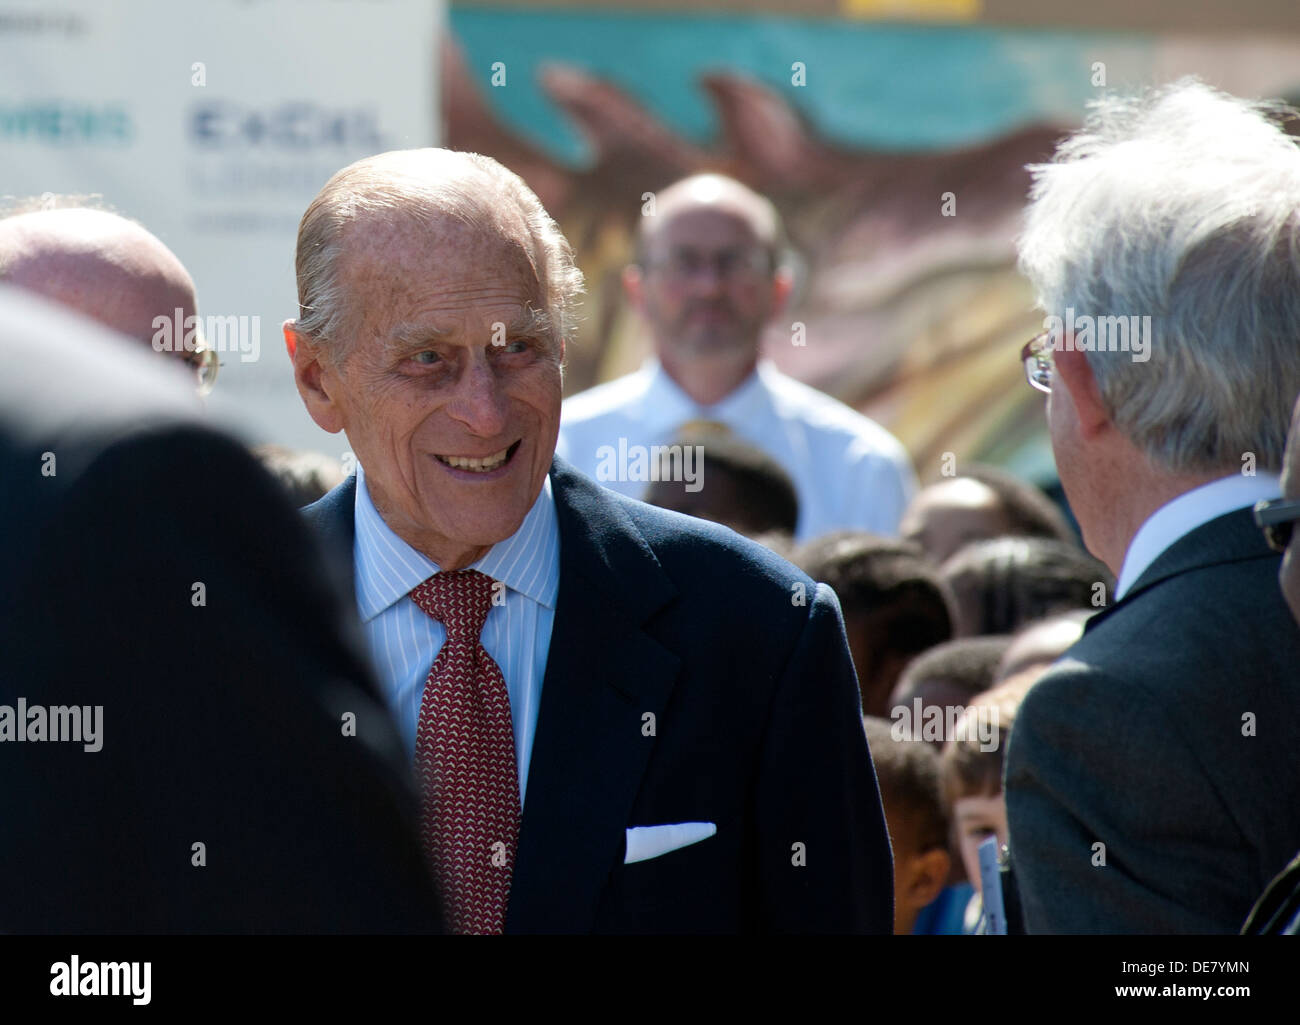 S.a.r. el Príncipe Felipe, Duque de Edimburgo, de 93 años, visita SS Robin los mundos más antiguo vapor completo,Victoria Docks, Londres, Inglaterra. Foto de stock